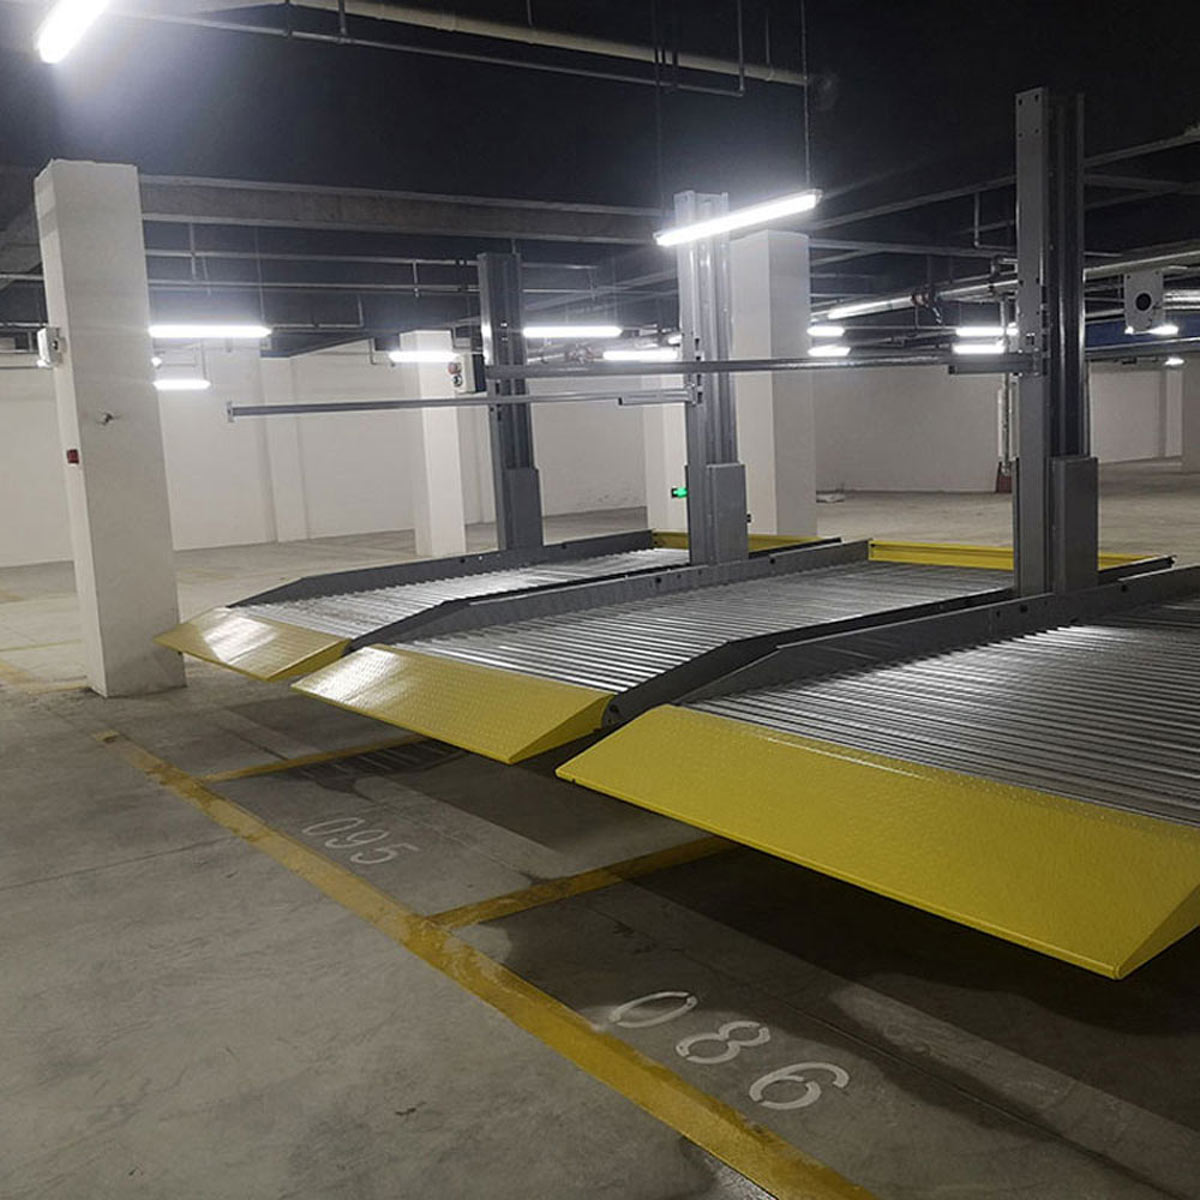 西秀立體停車庫改善區域停車四種解決模式